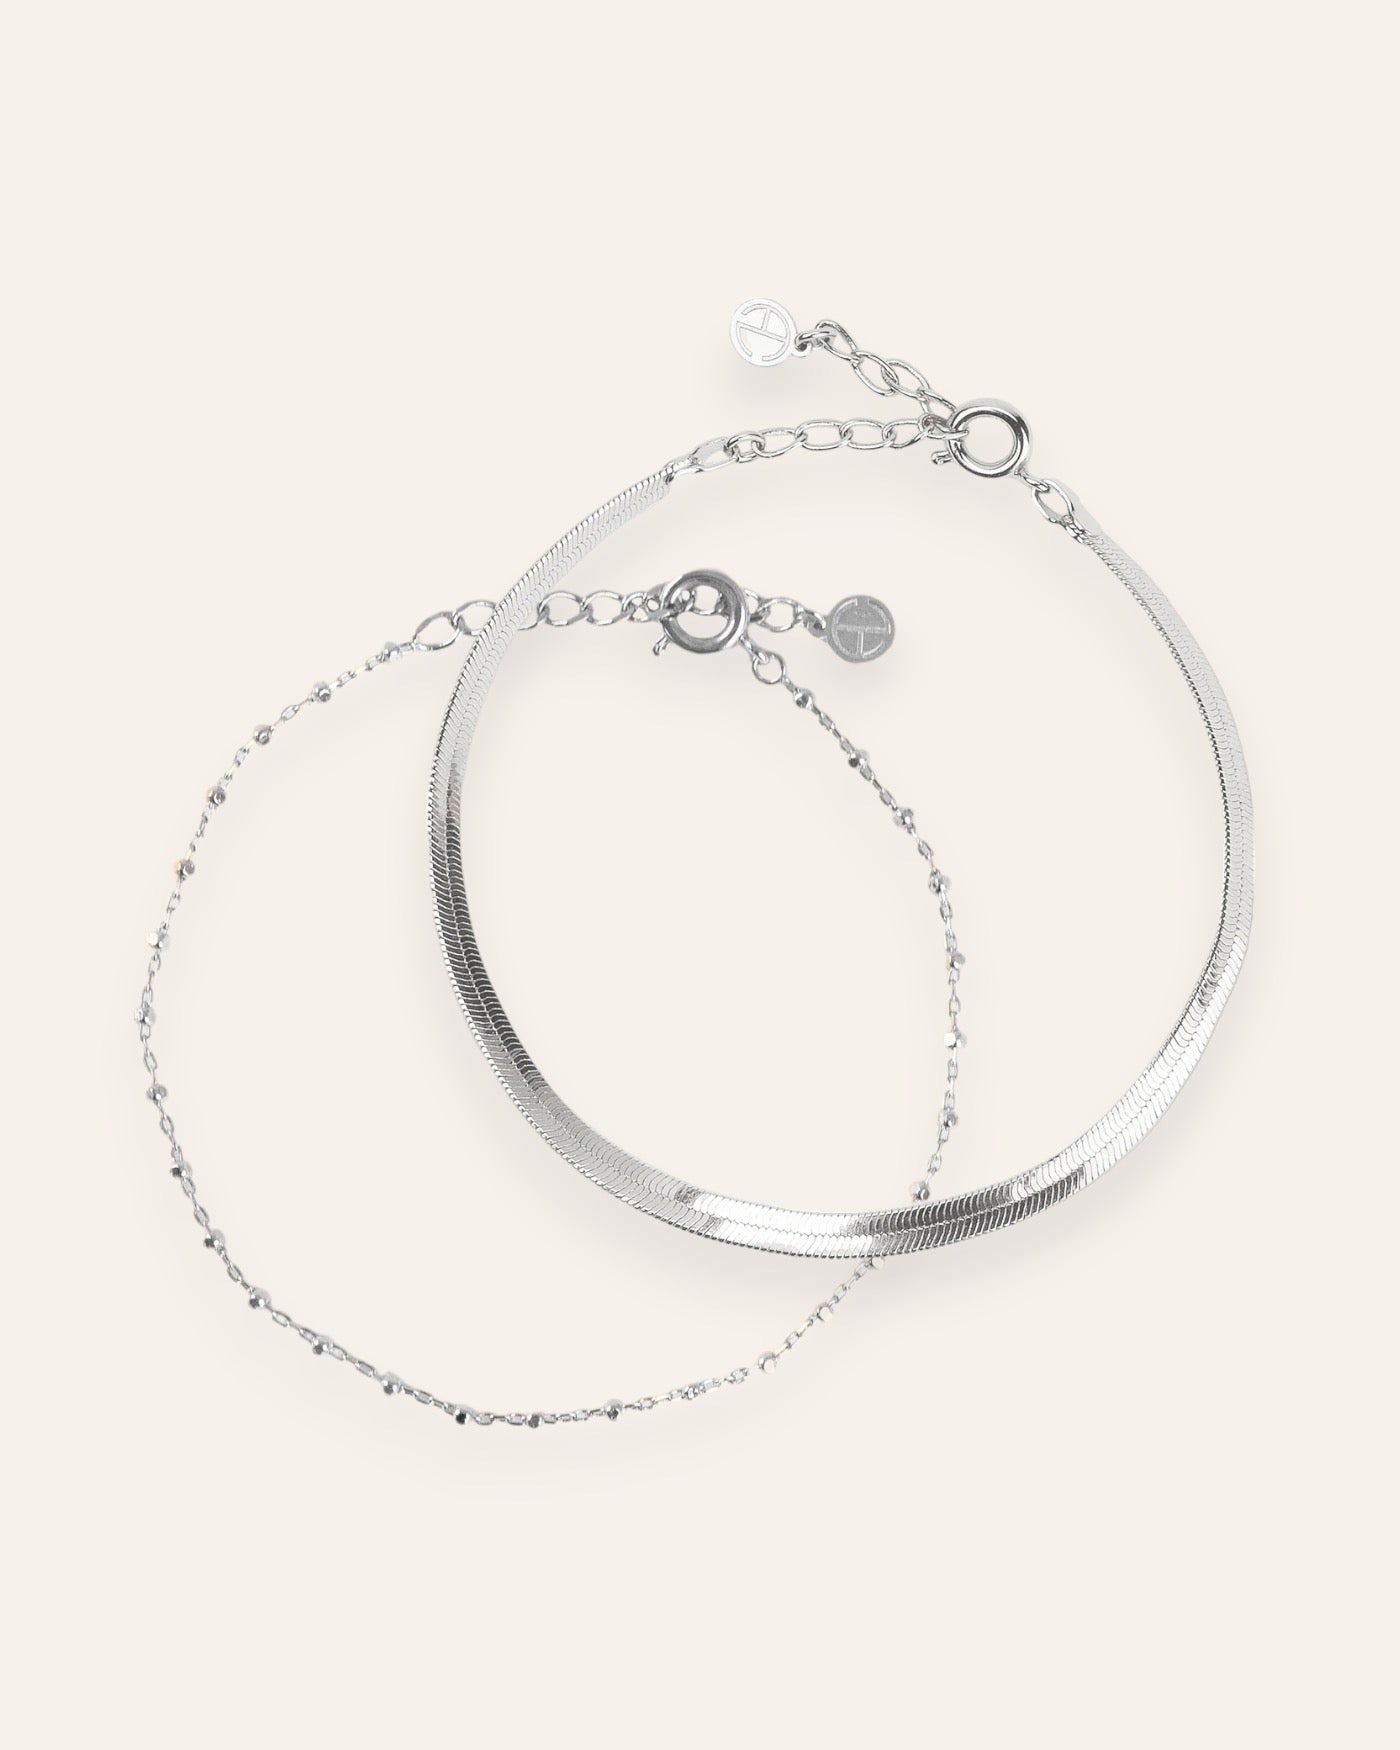 Composition de deux bracelets, avec un bracelet en chaîne fine habillée de petites mailles carrées, et un bracelet en chaîne plate en argent massif 925.